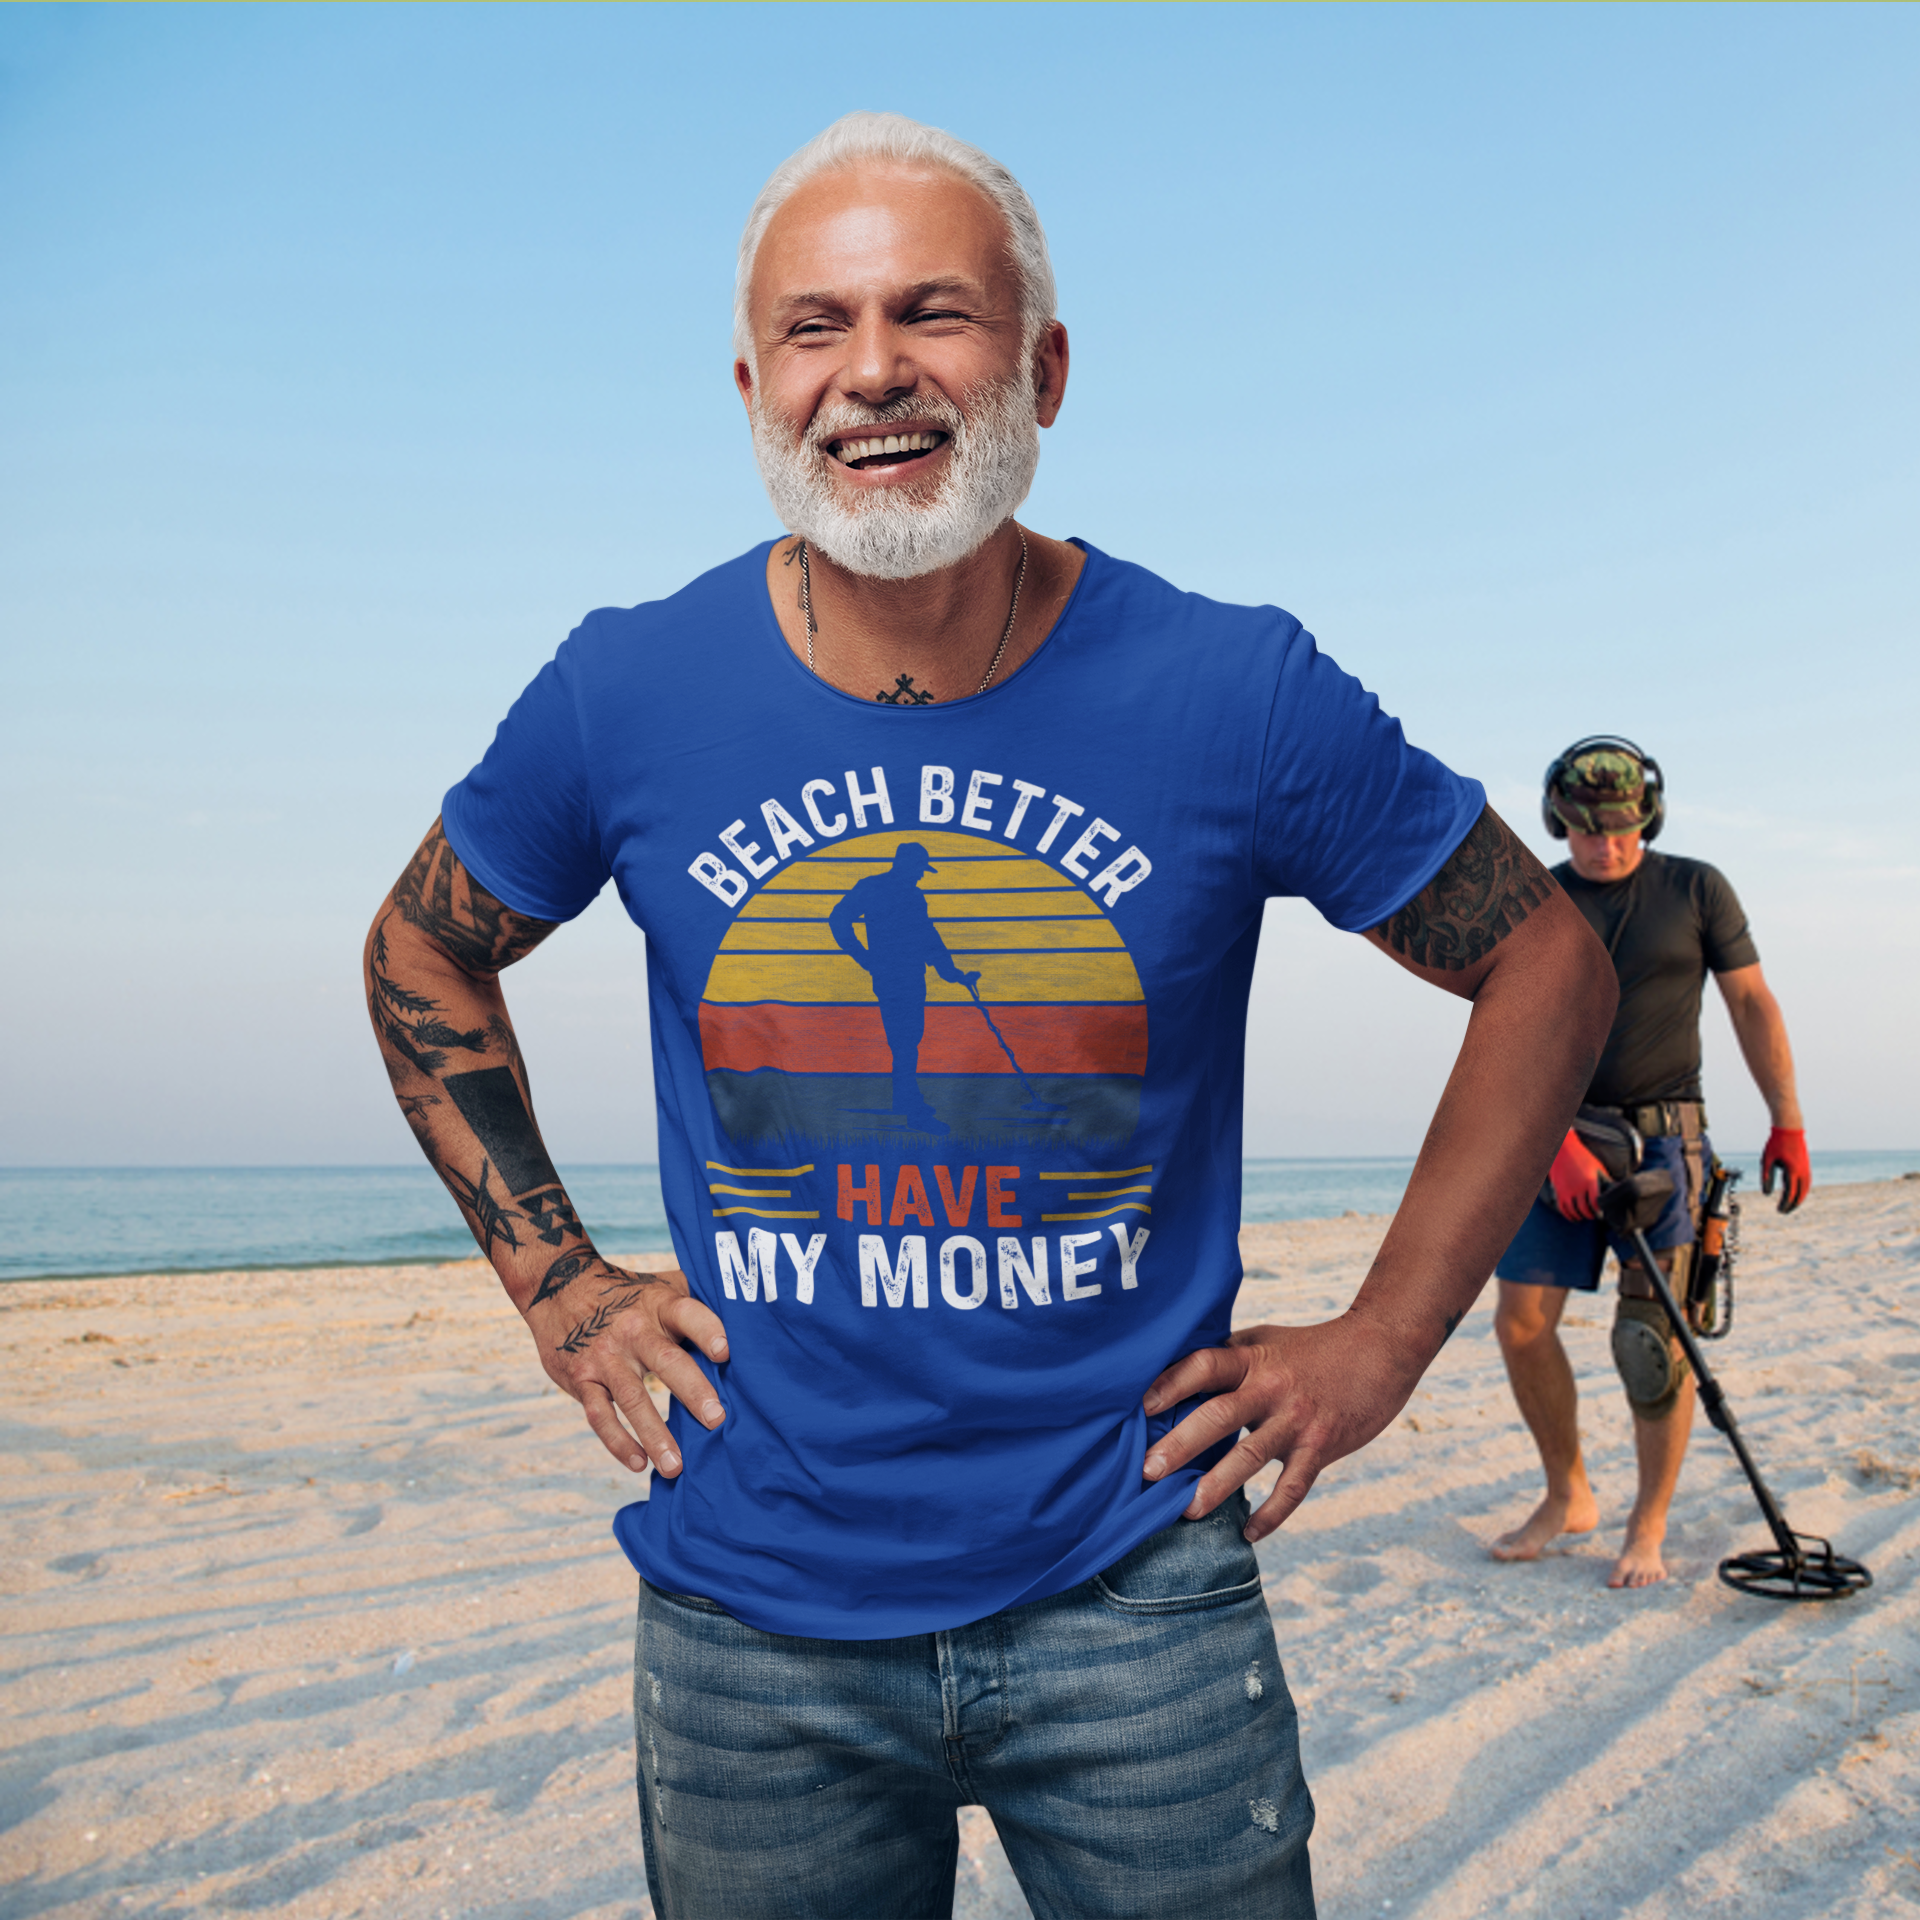 Beach, better have my money T-shirt